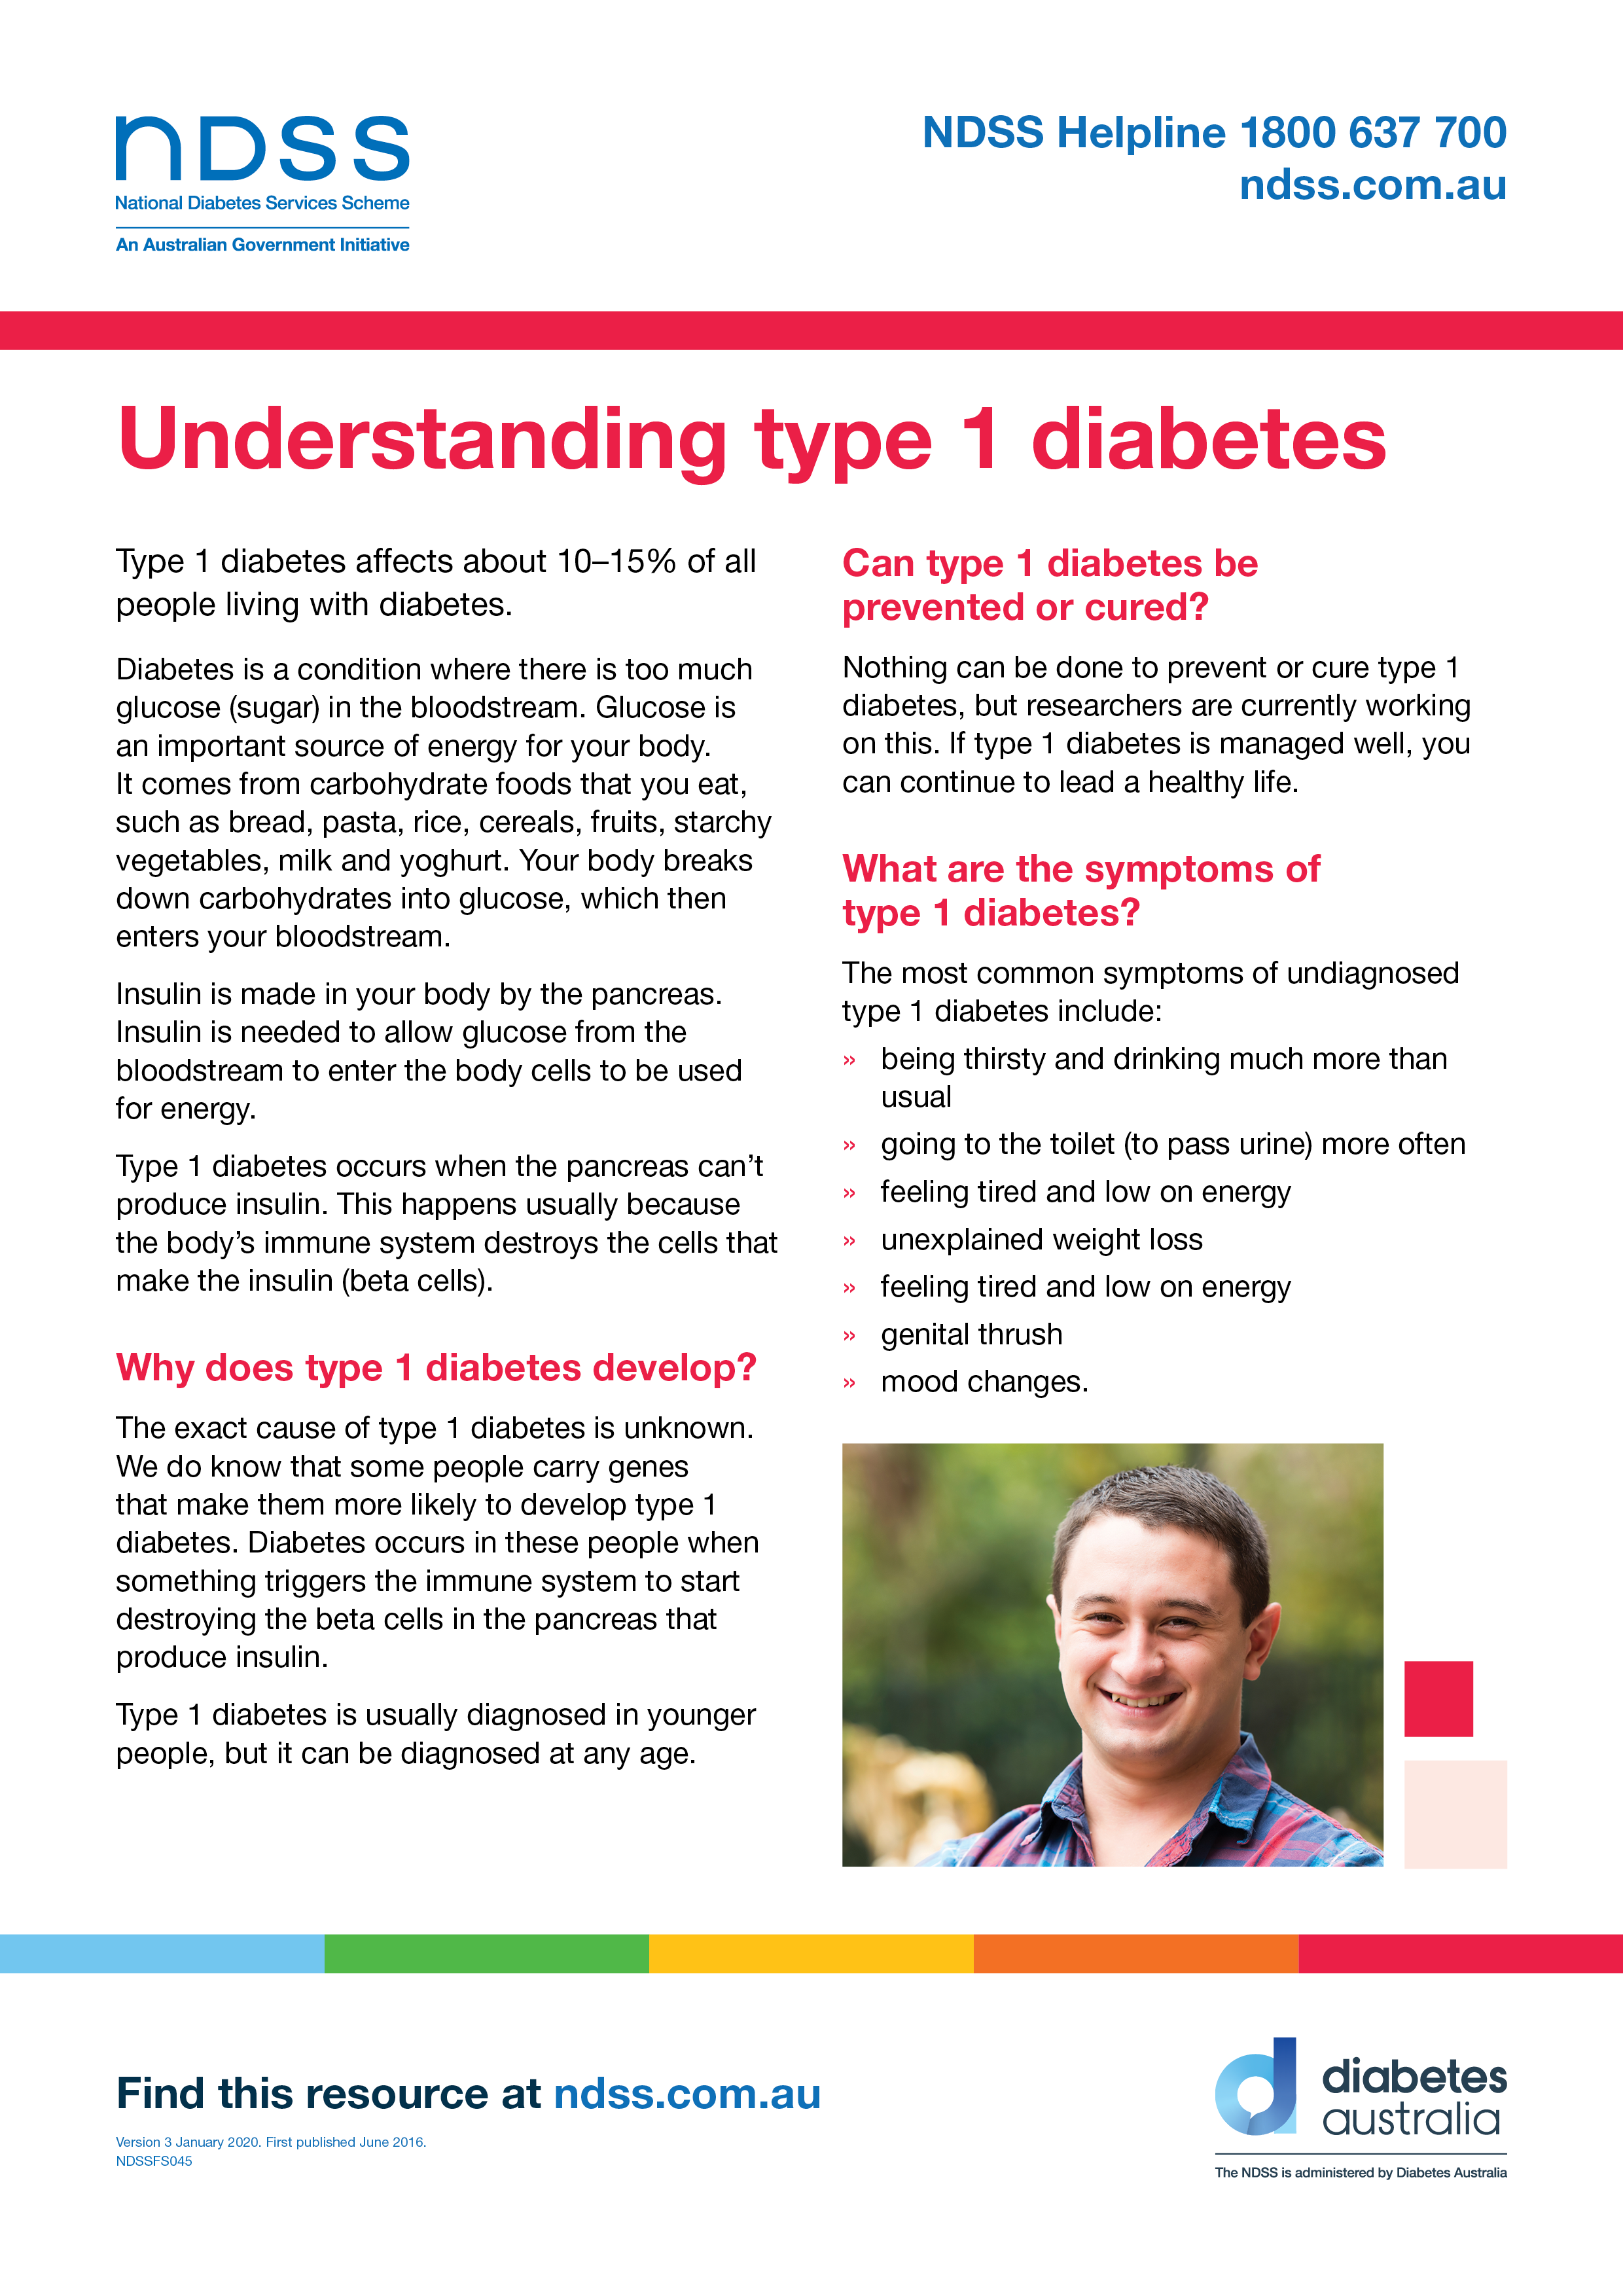 Understanding type 1 diabetes fact sheet – NDSS